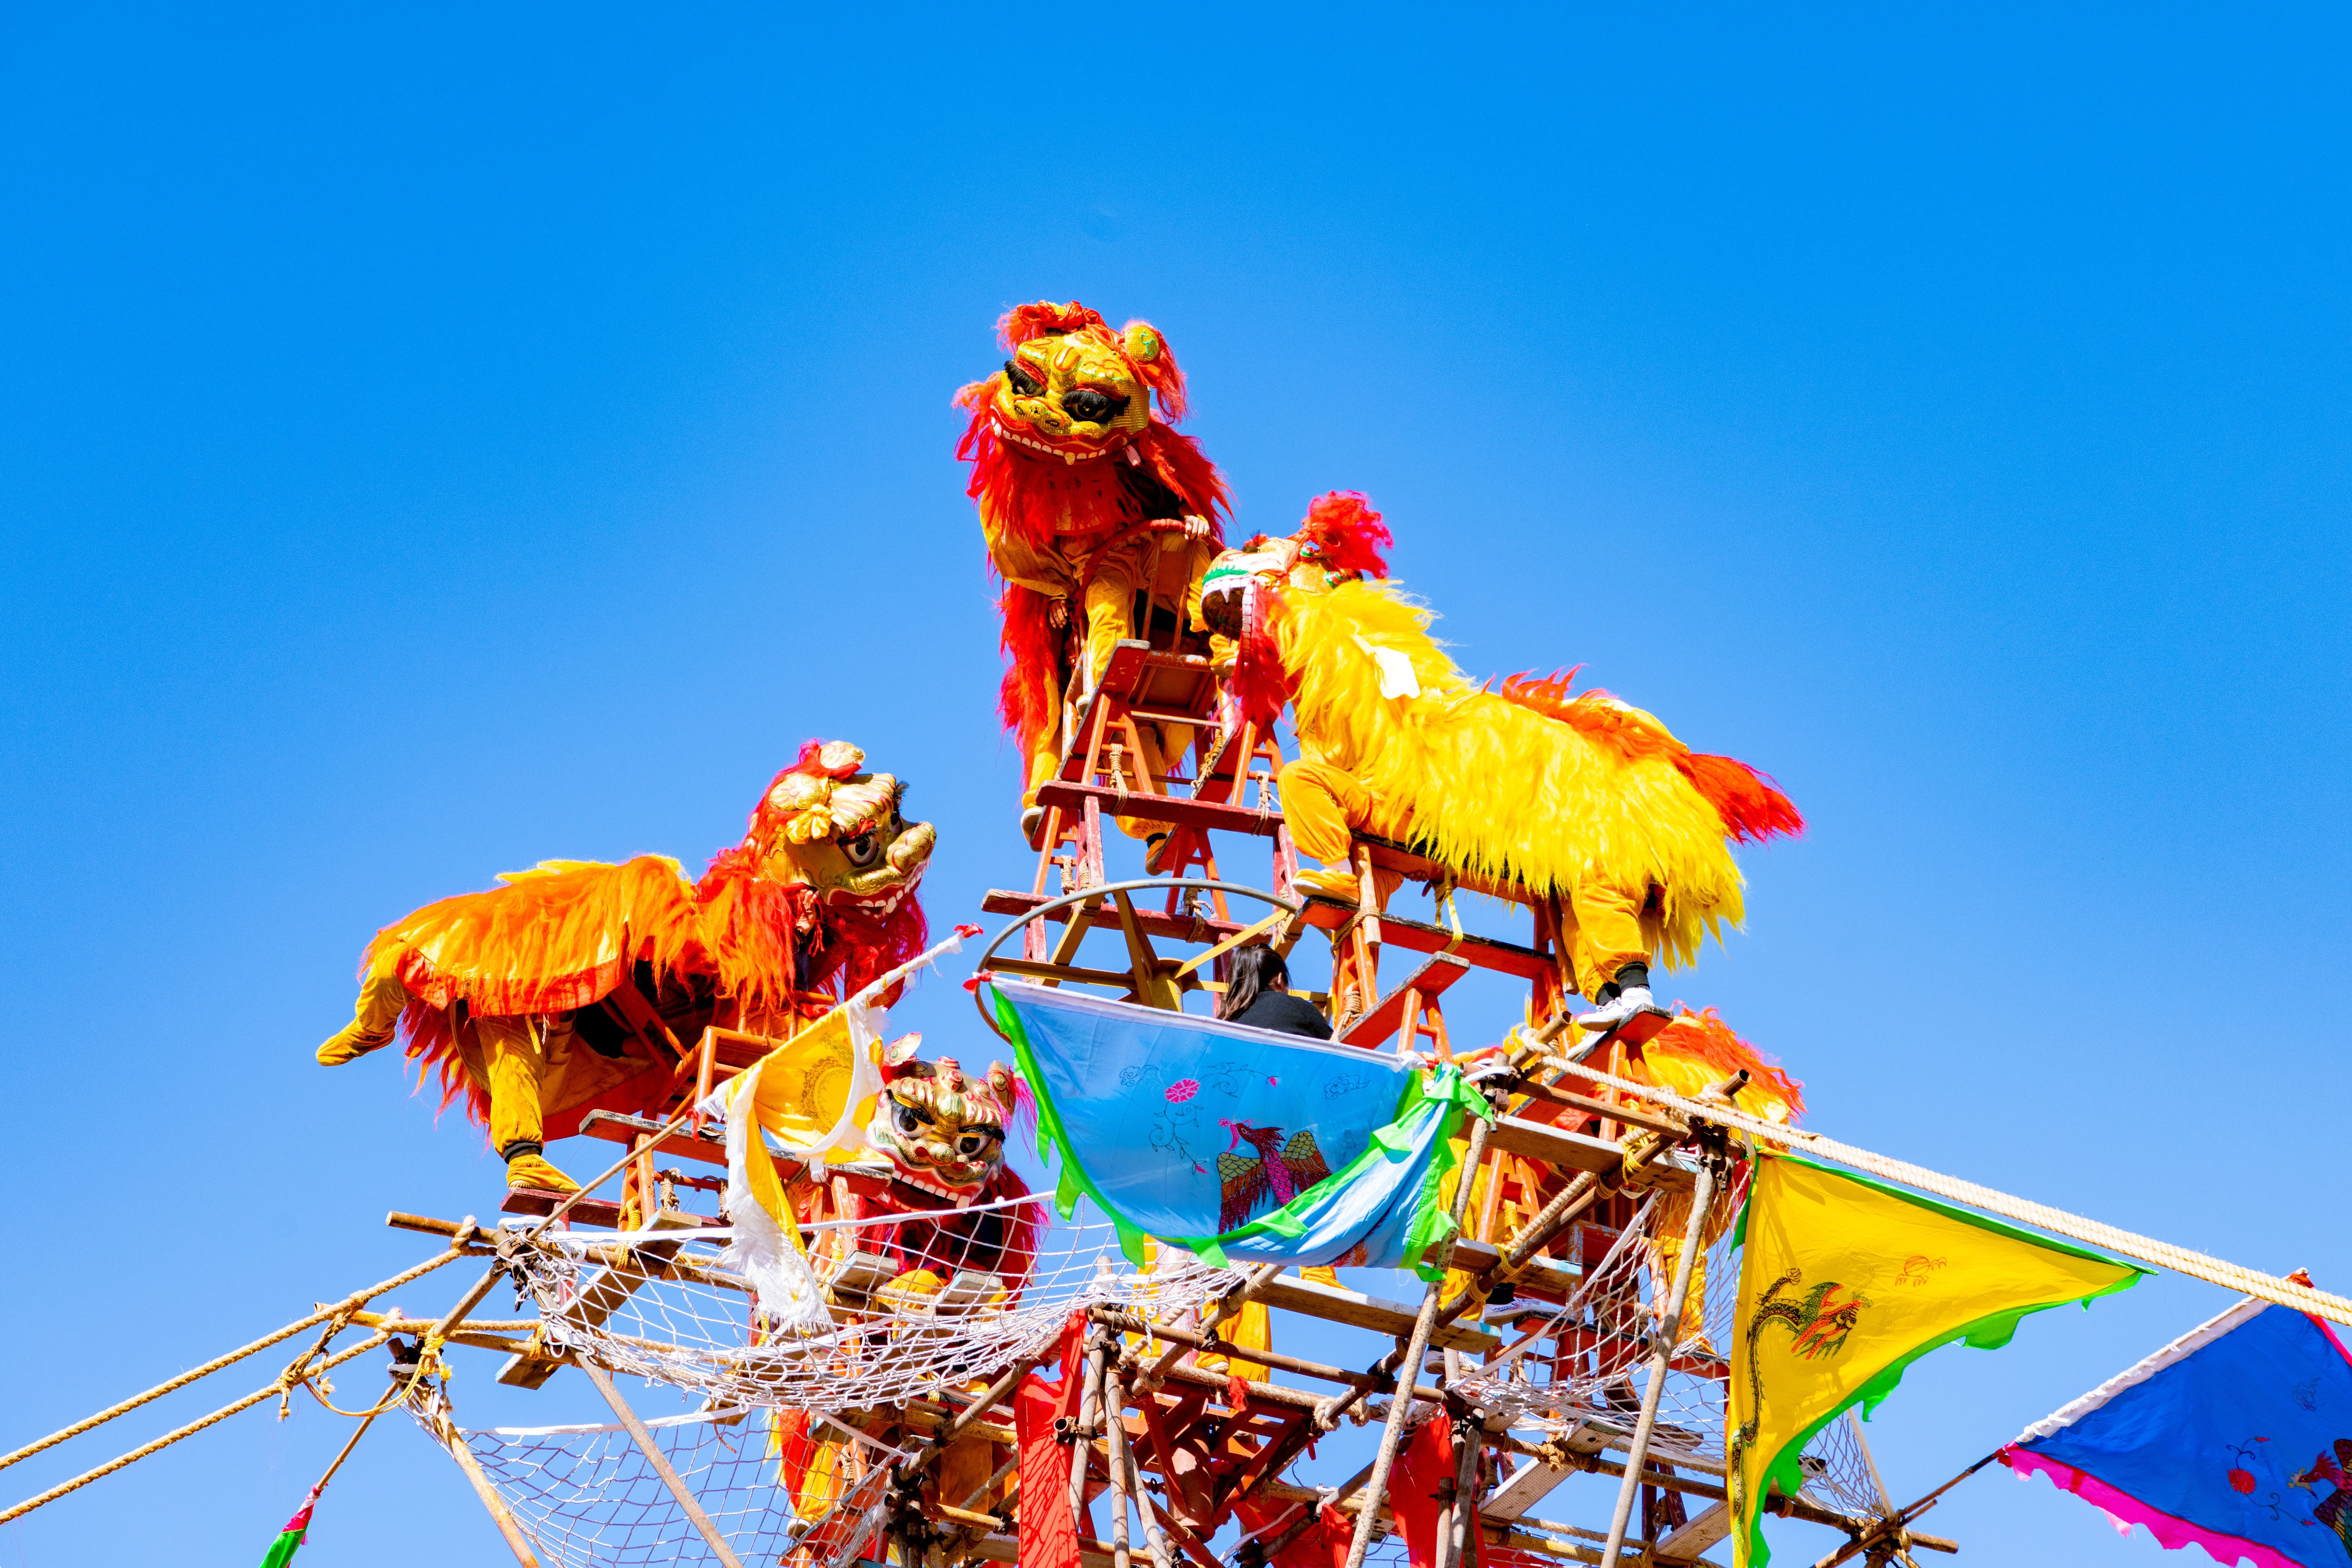 《狮舞》狮舞在中国传统节日、庆典和庙会上非常受欢迎。舞狮者经过长时间的训练，熟练掌握舞狮技巧，将狮子演绎得栩栩如生。狮舞不仅给观众带来了视觉上的享受，也展示了中国传统文化的魅力。